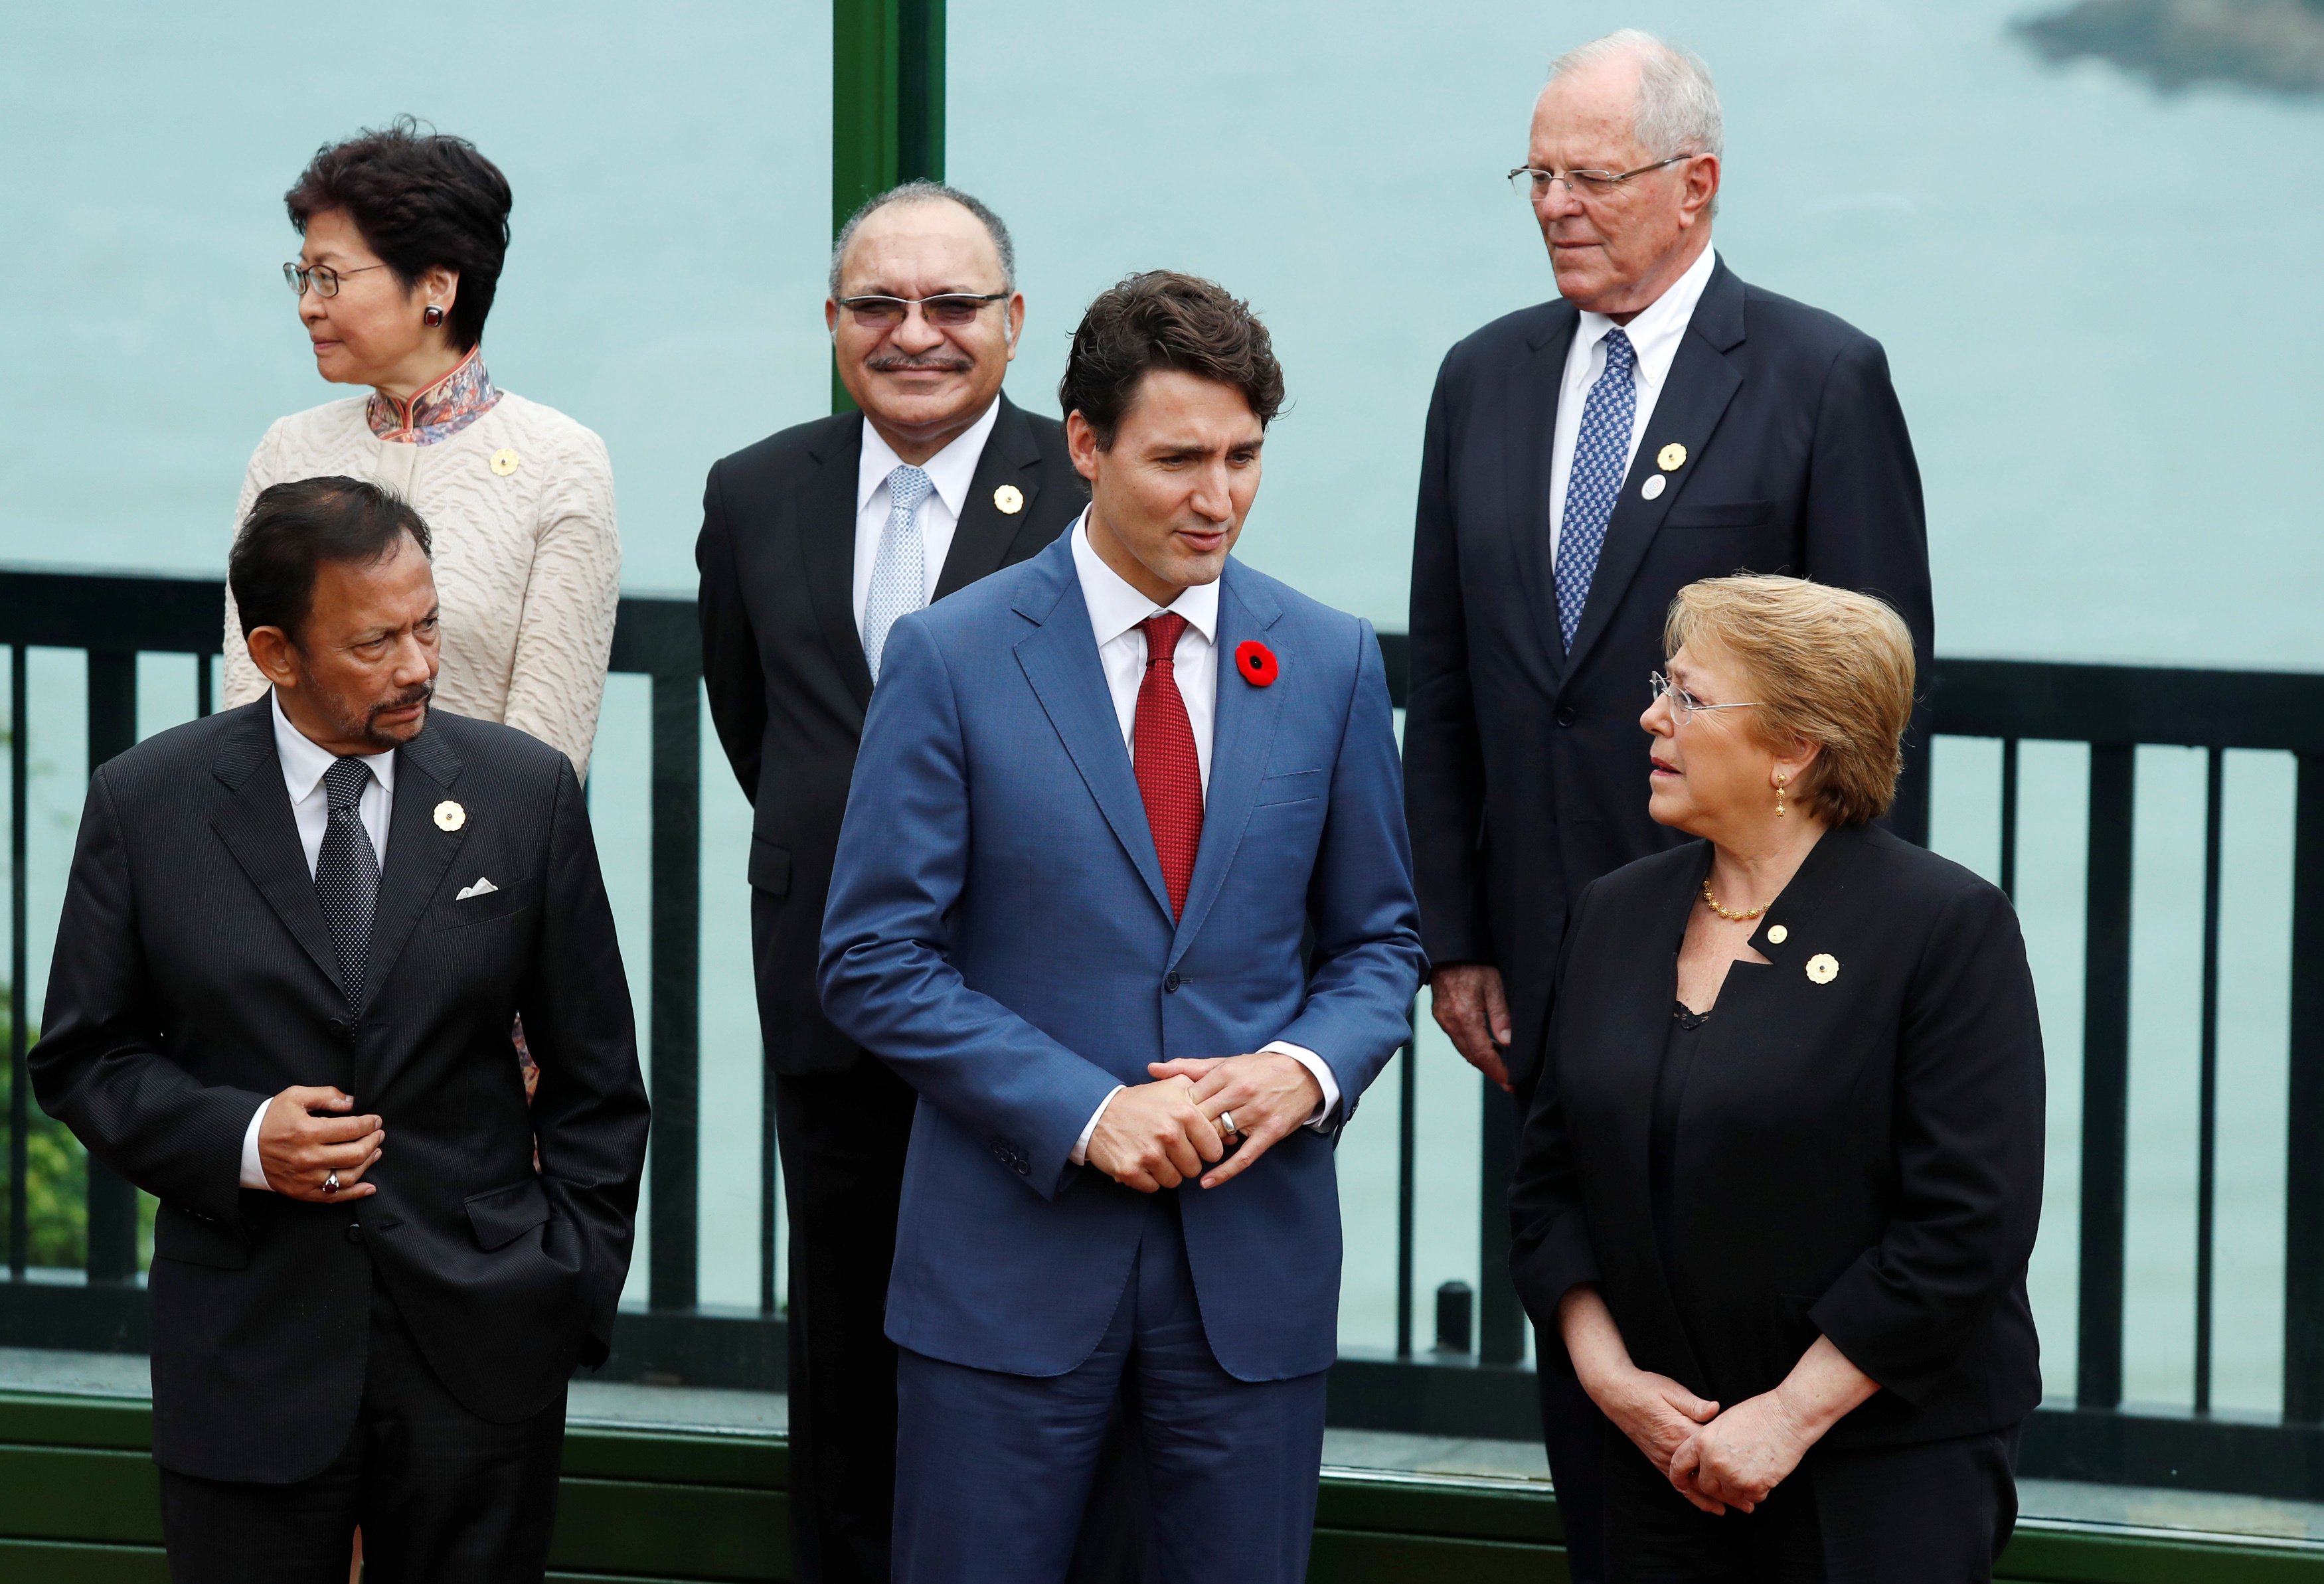 رئيس وزراء كندا يتحدث إلى رئيسة تشيلى